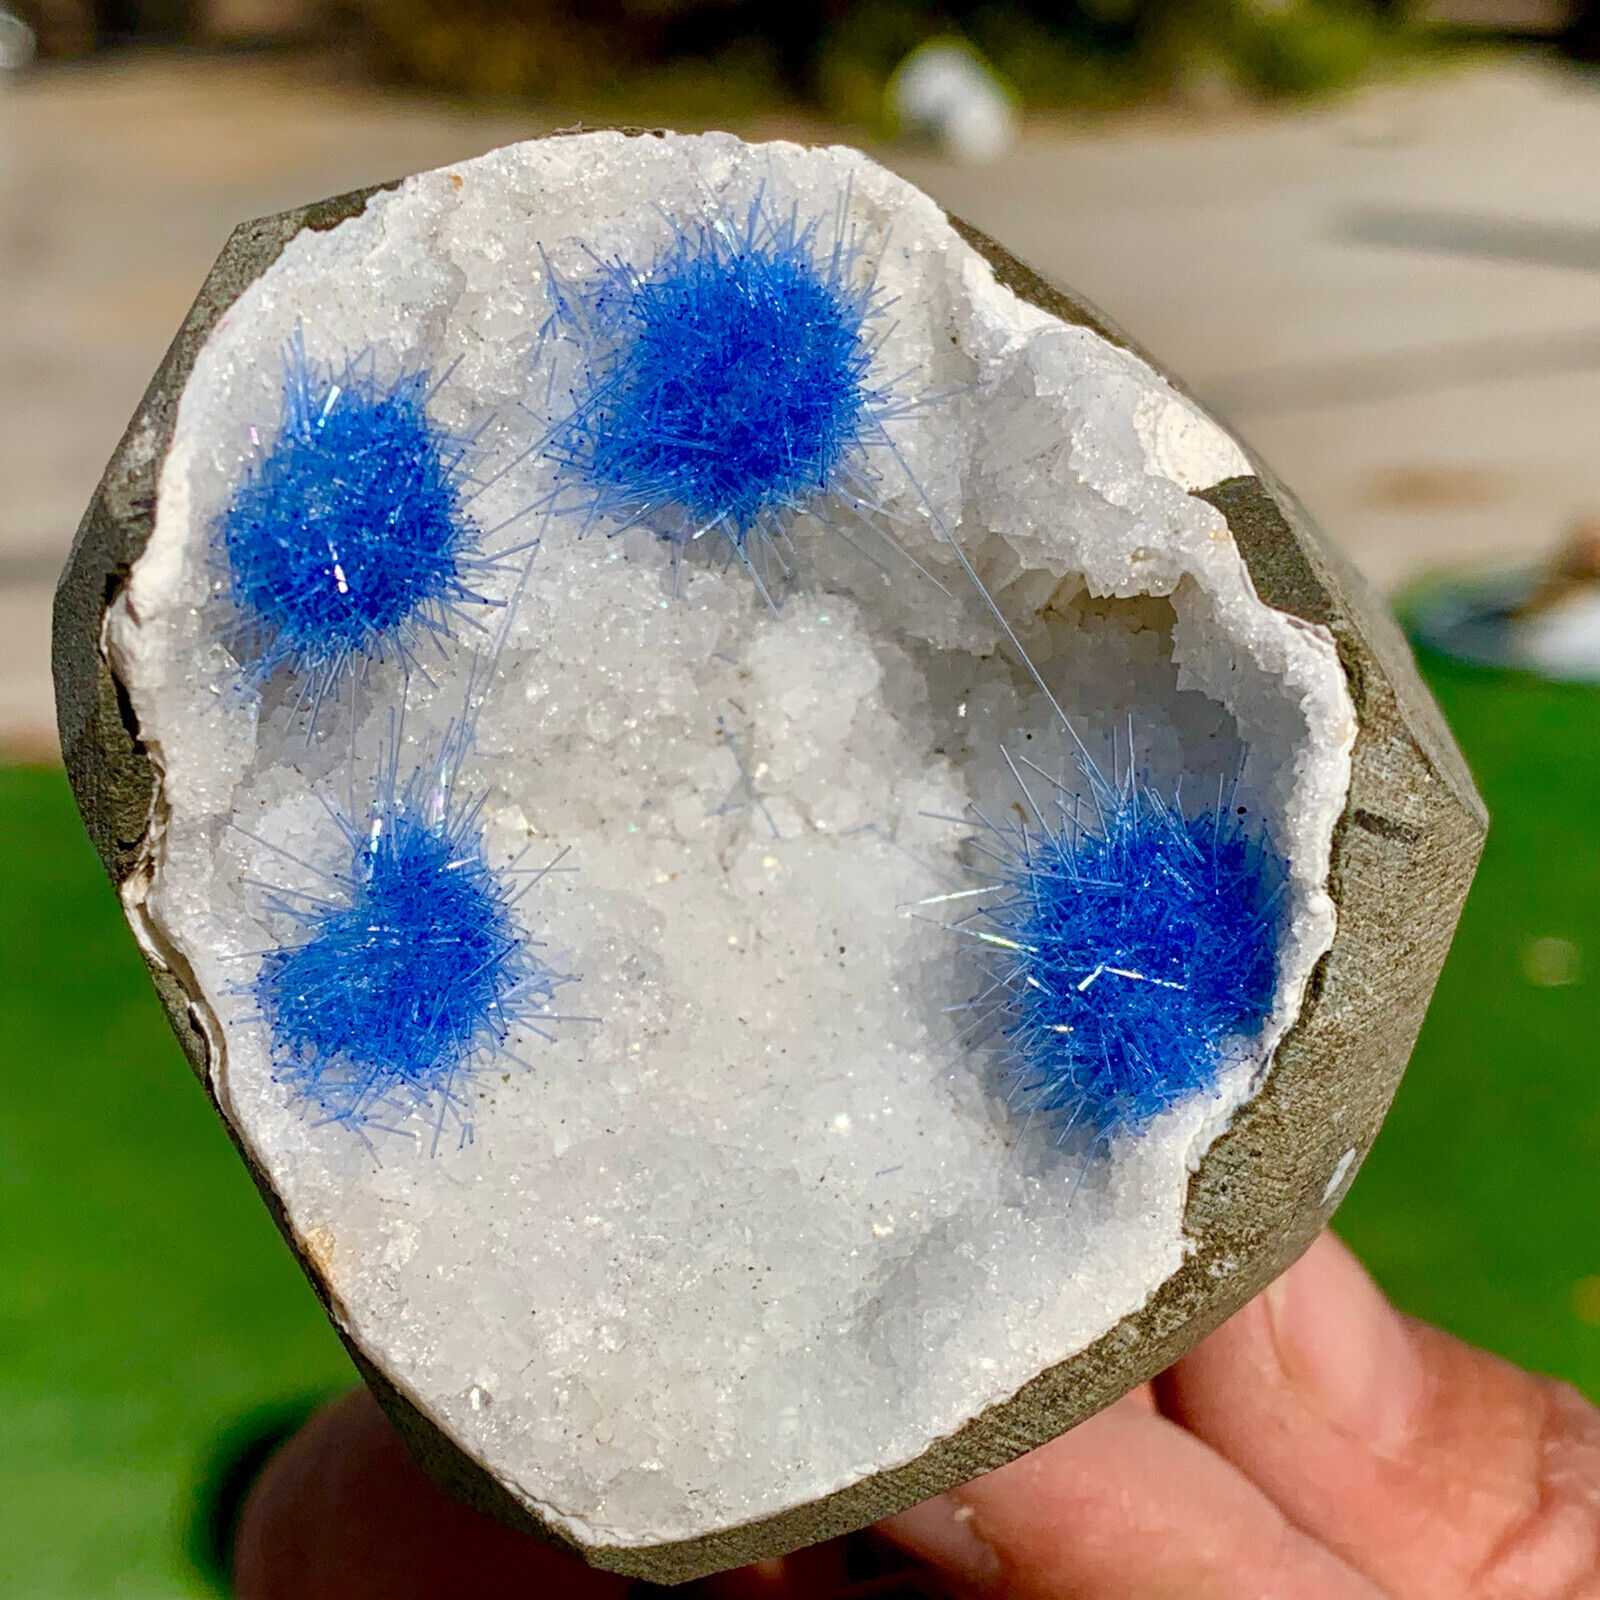 439G Rare Moroccan blue magnesite and quartz crystal coexisting specimen